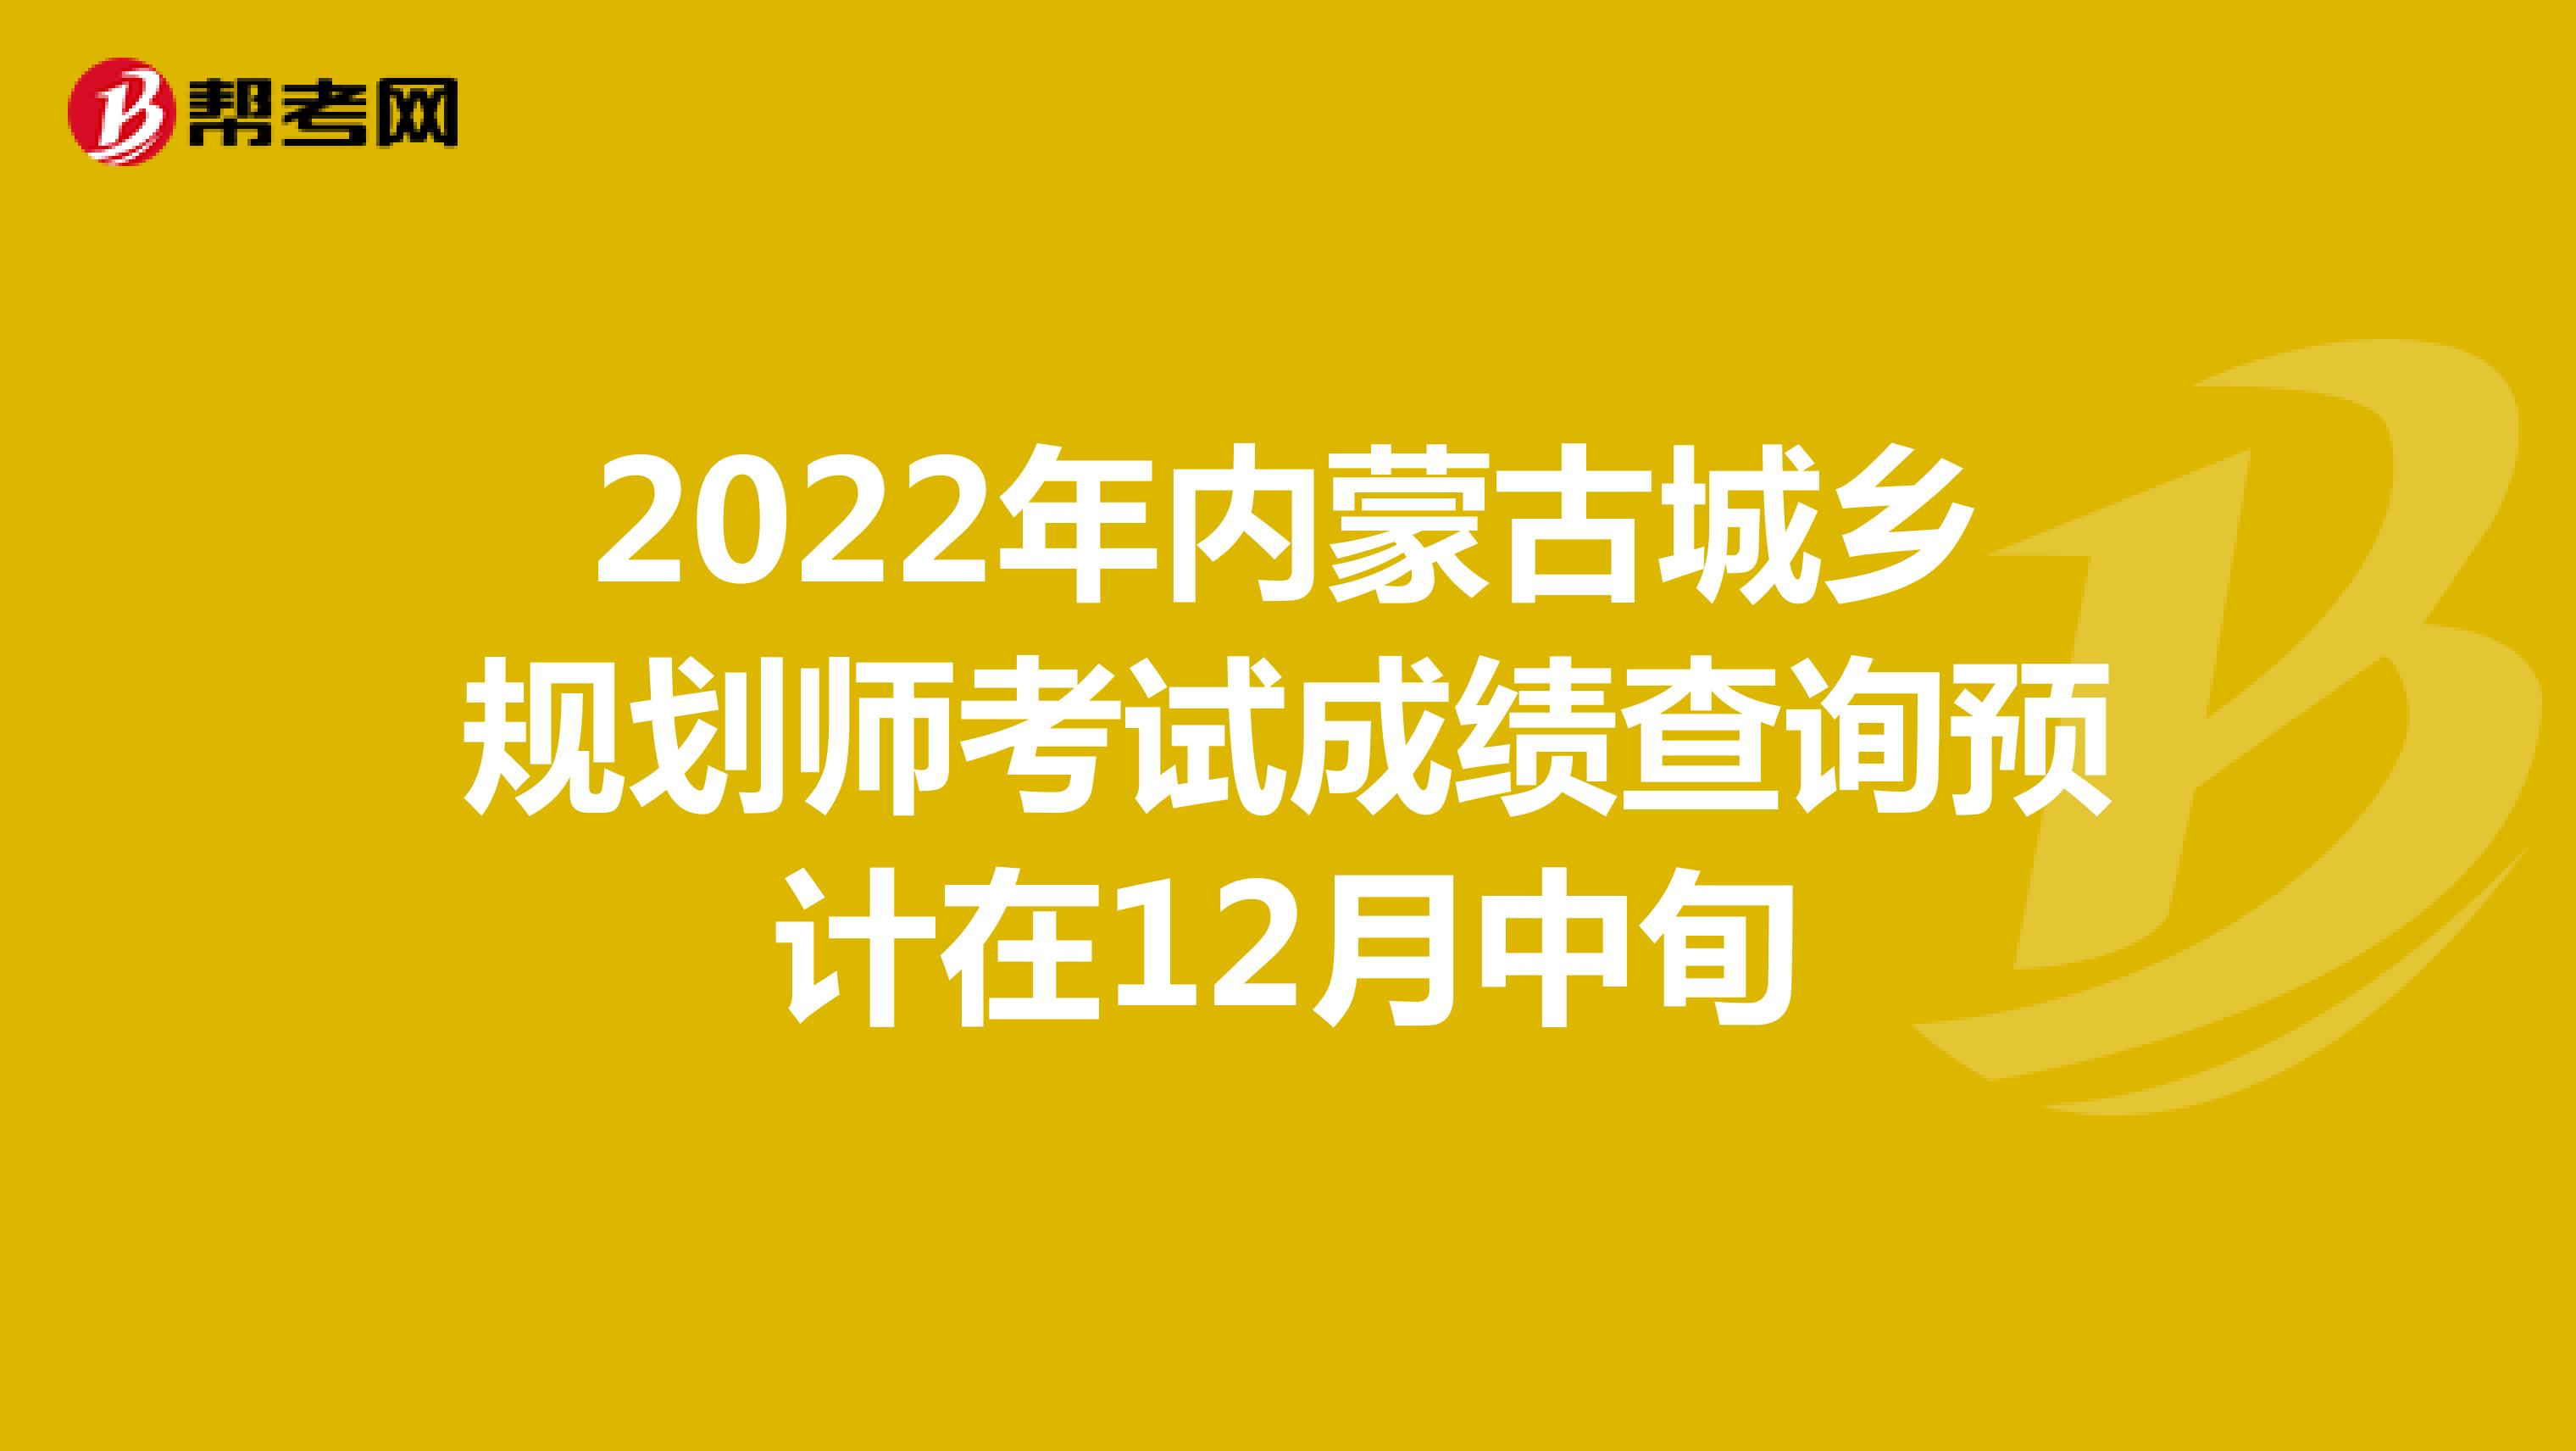 2022年内蒙古城乡规划师考试成绩查询预计在12月中旬